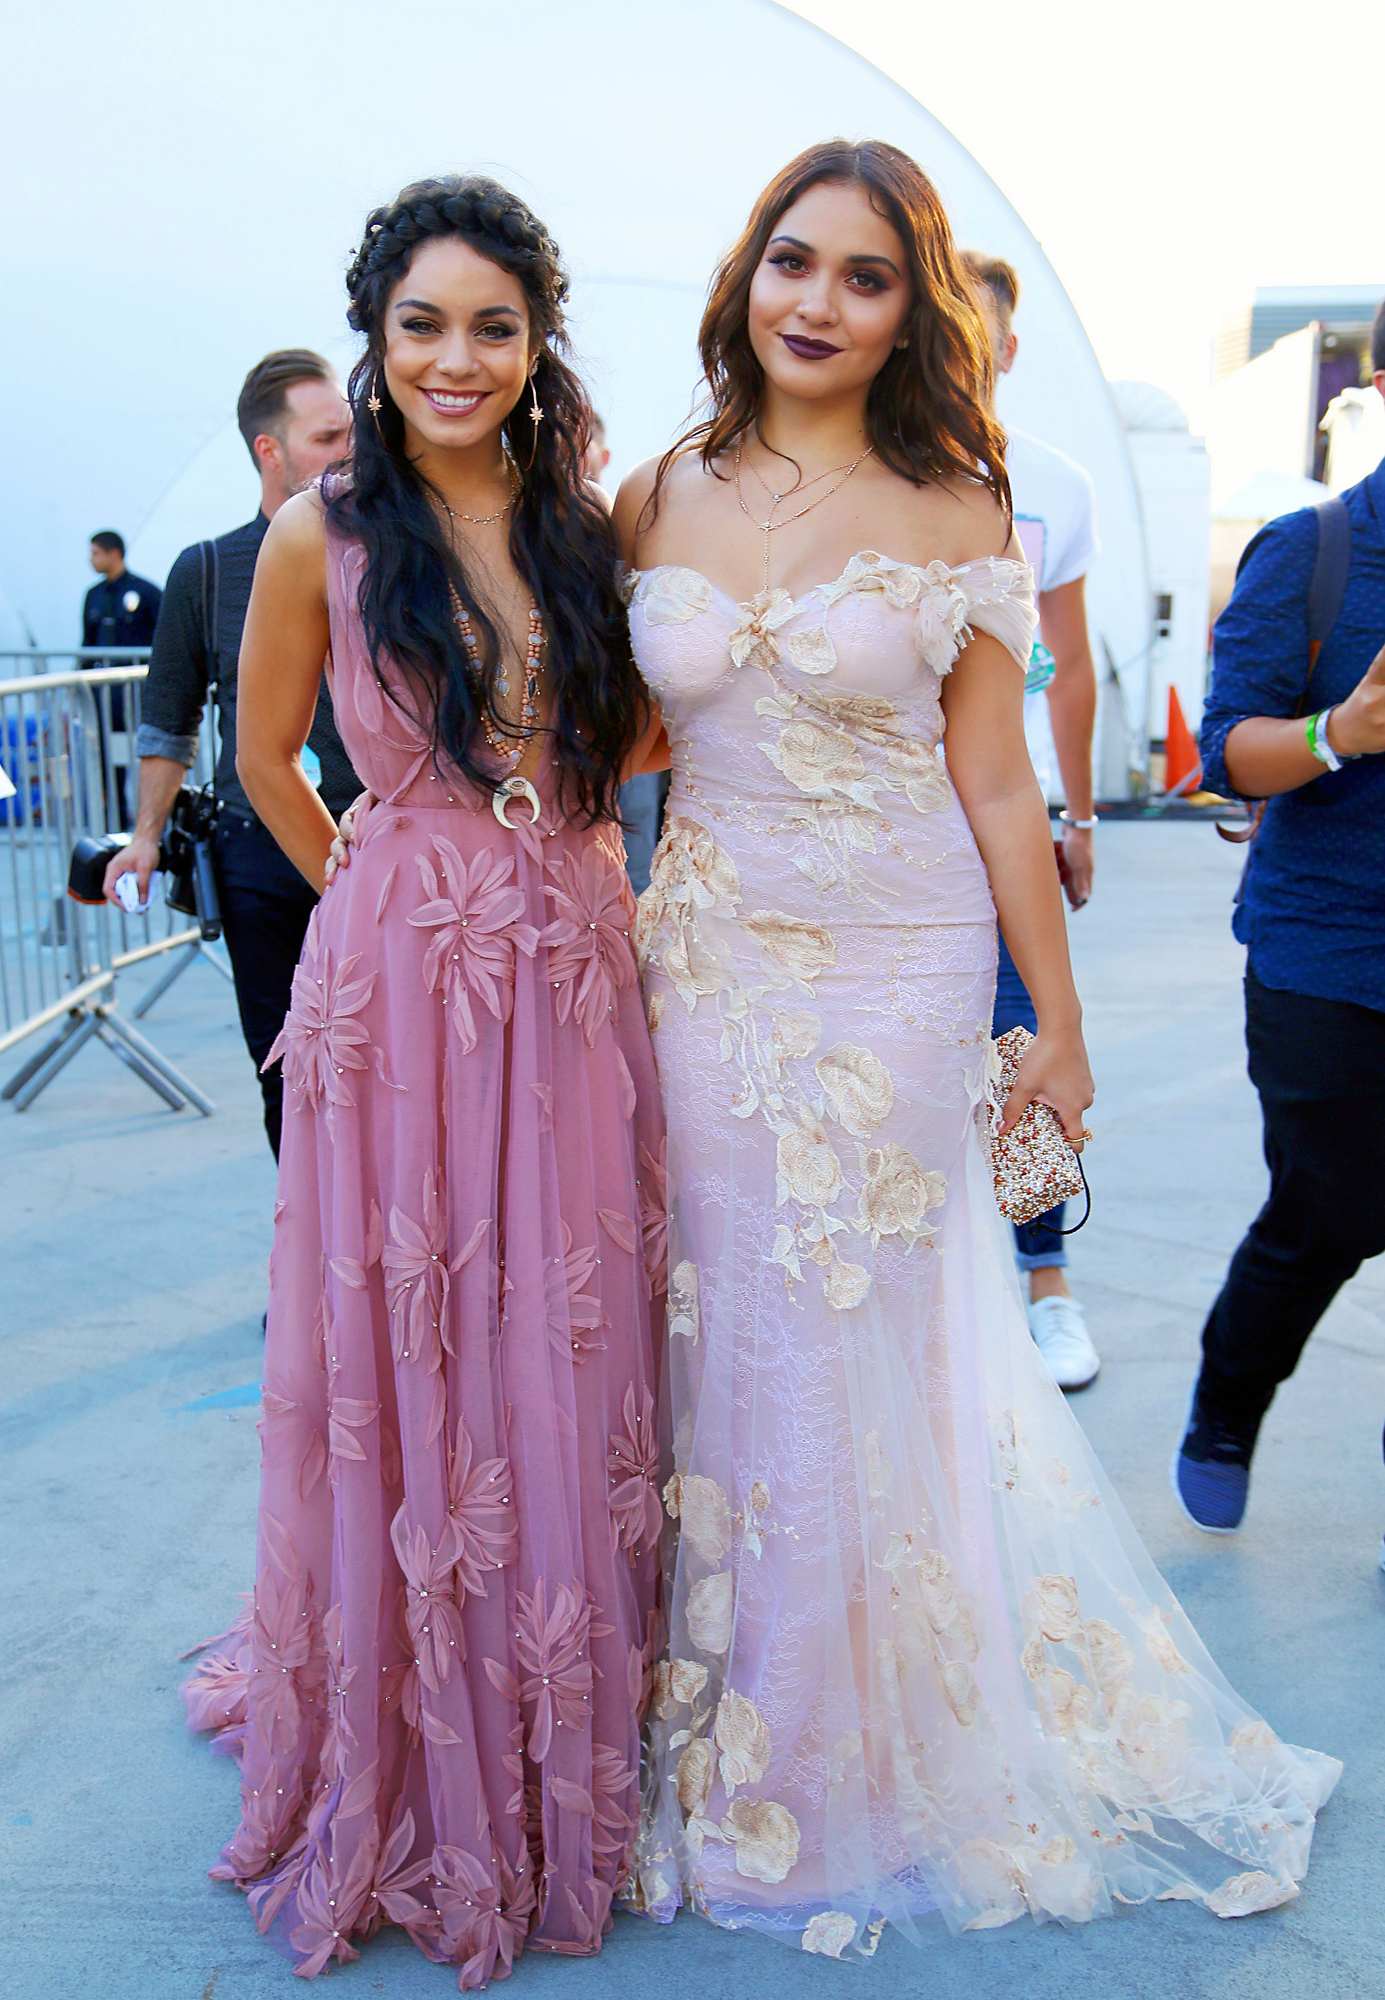 Sister Love! Vanessa Hudgens and Stella Hudgens Pose During MTV VMA